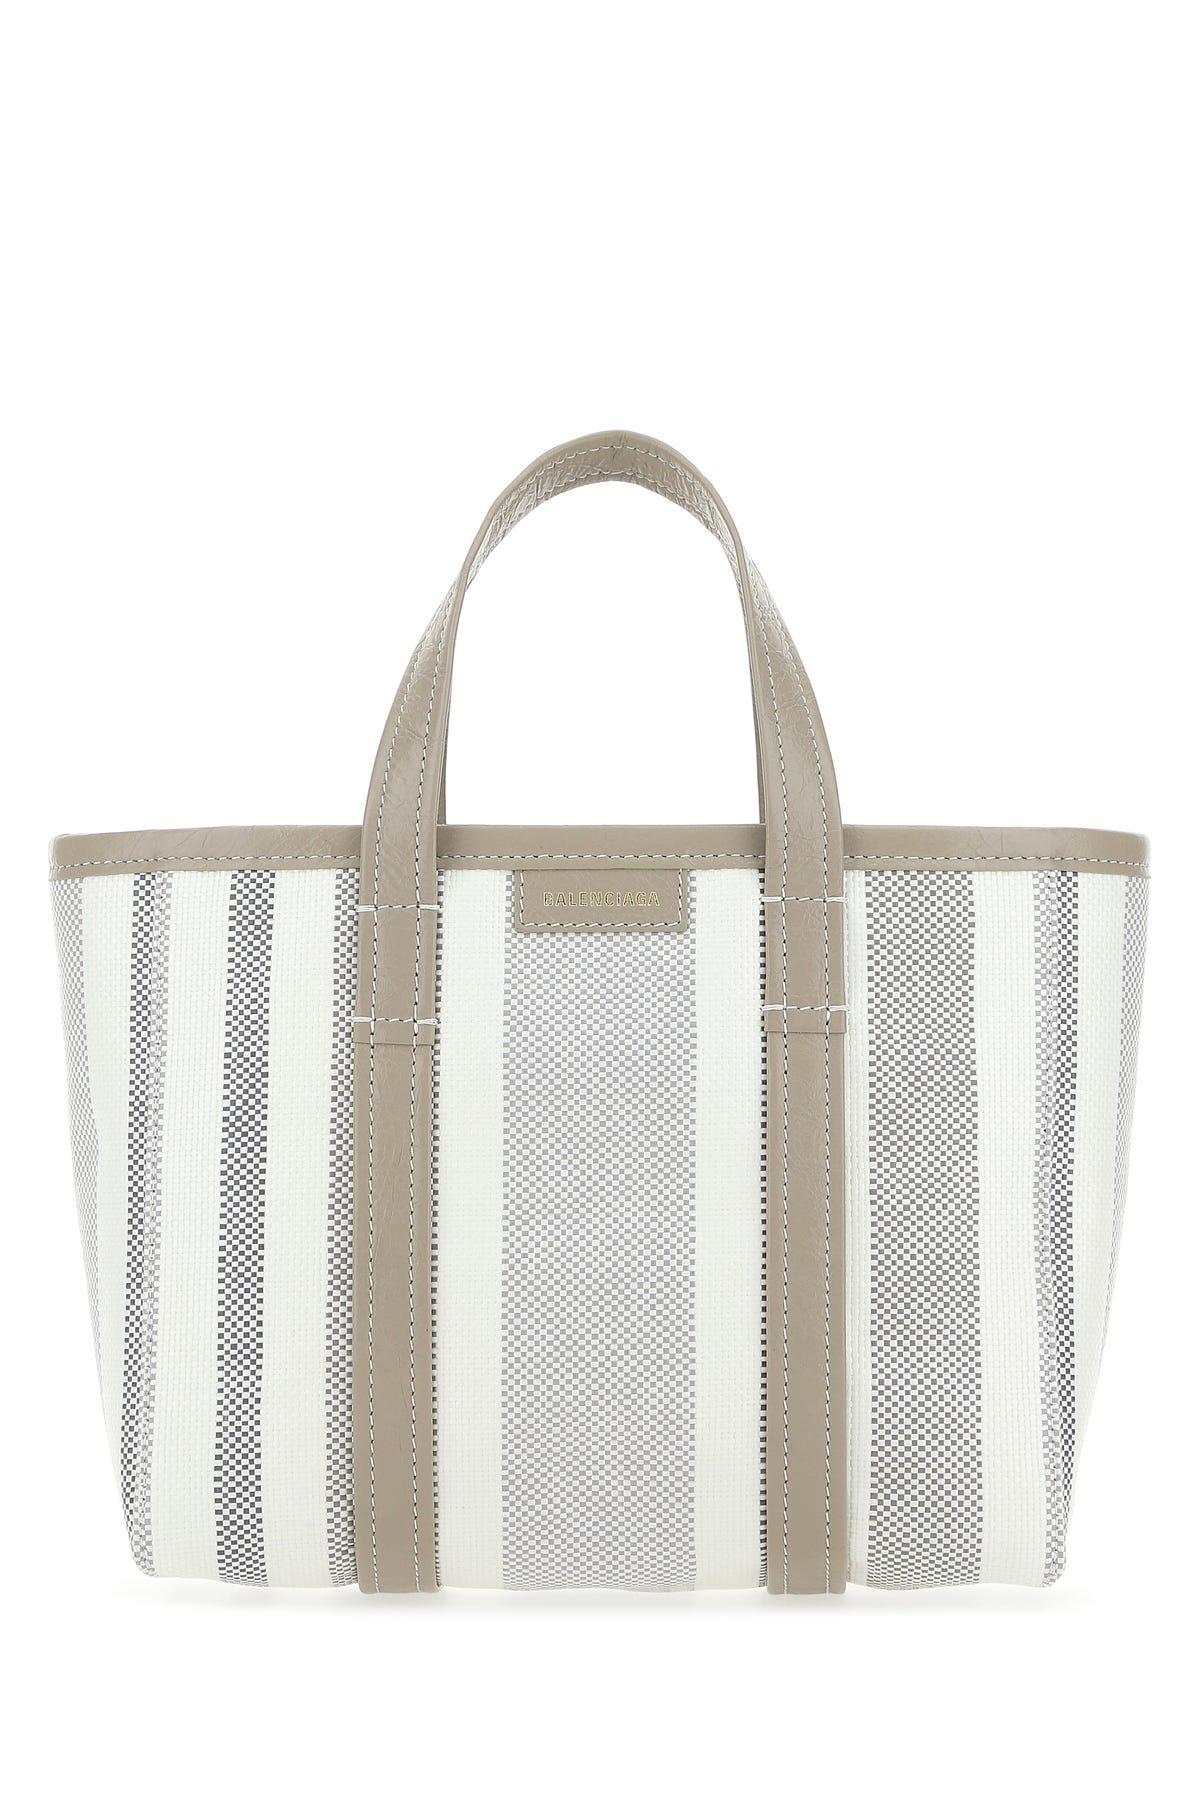 Balenciaga Striped Small Tote Bag | Lyst